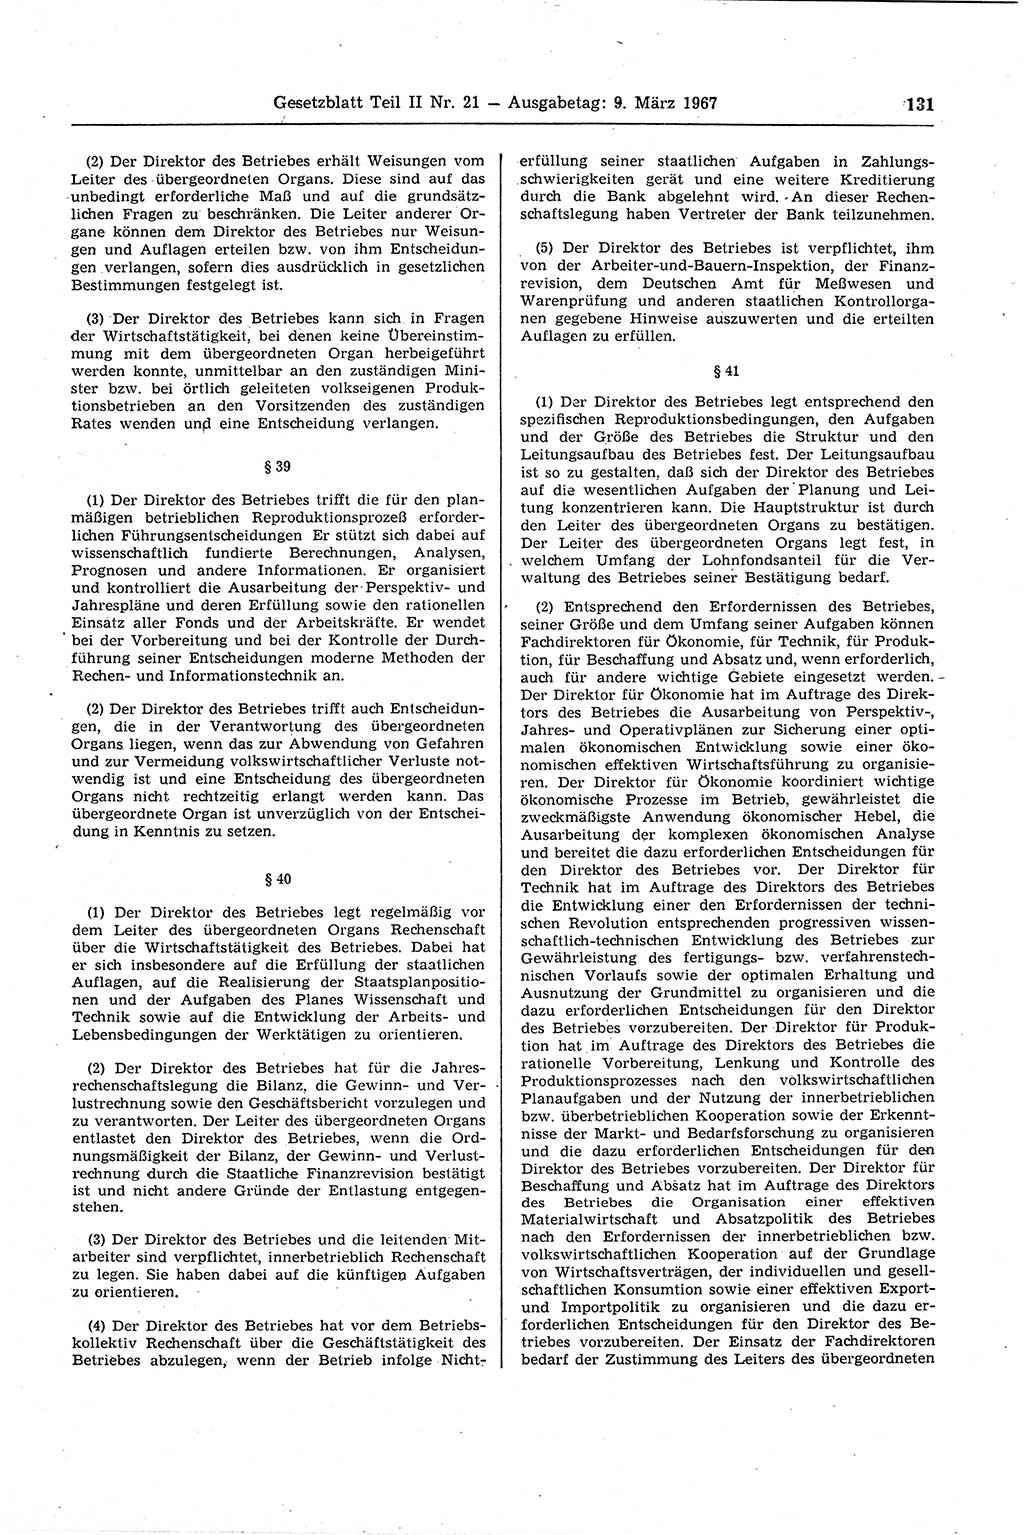 Gesetzblatt (GBl.) der Deutschen Demokratischen Republik (DDR) Teil ⅠⅠ 1967, Seite 131 (GBl. DDR ⅠⅠ 1967, S. 131)